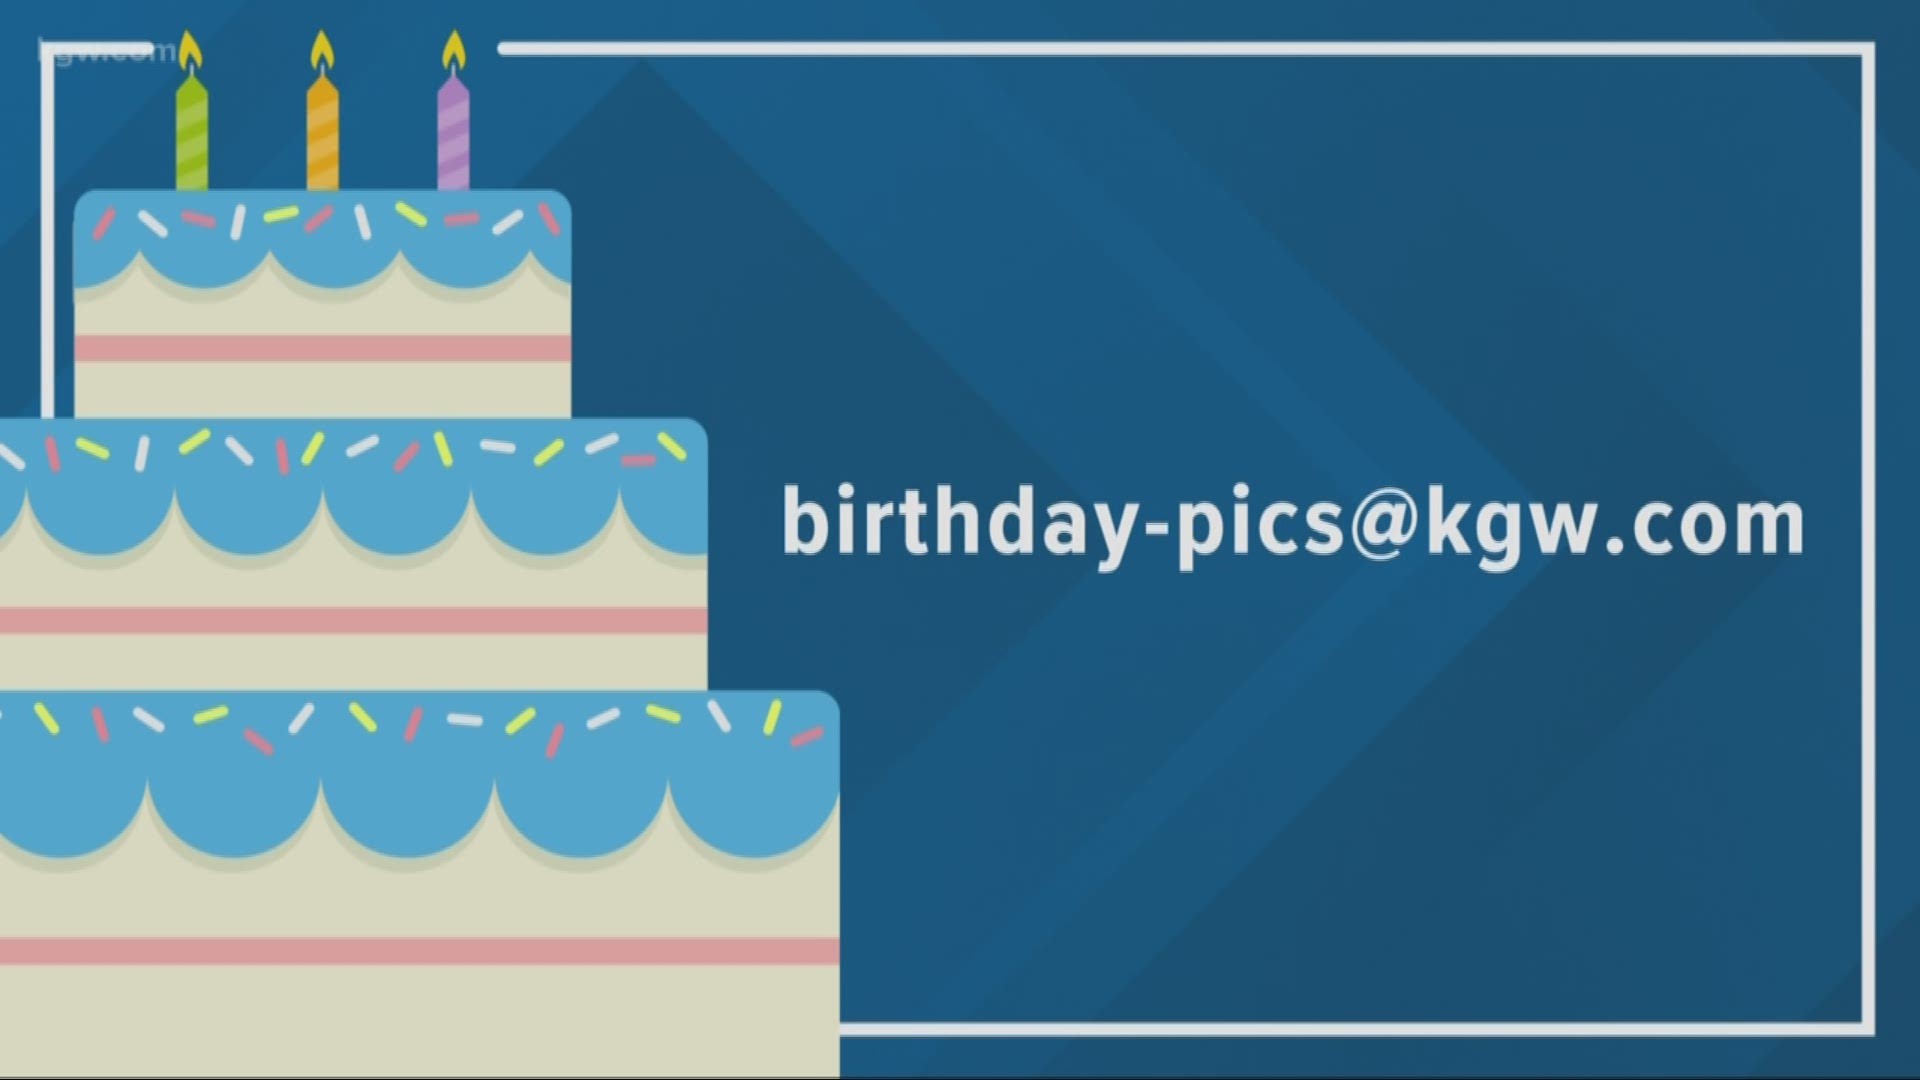 KGW viewer birthdays: 3-18-19